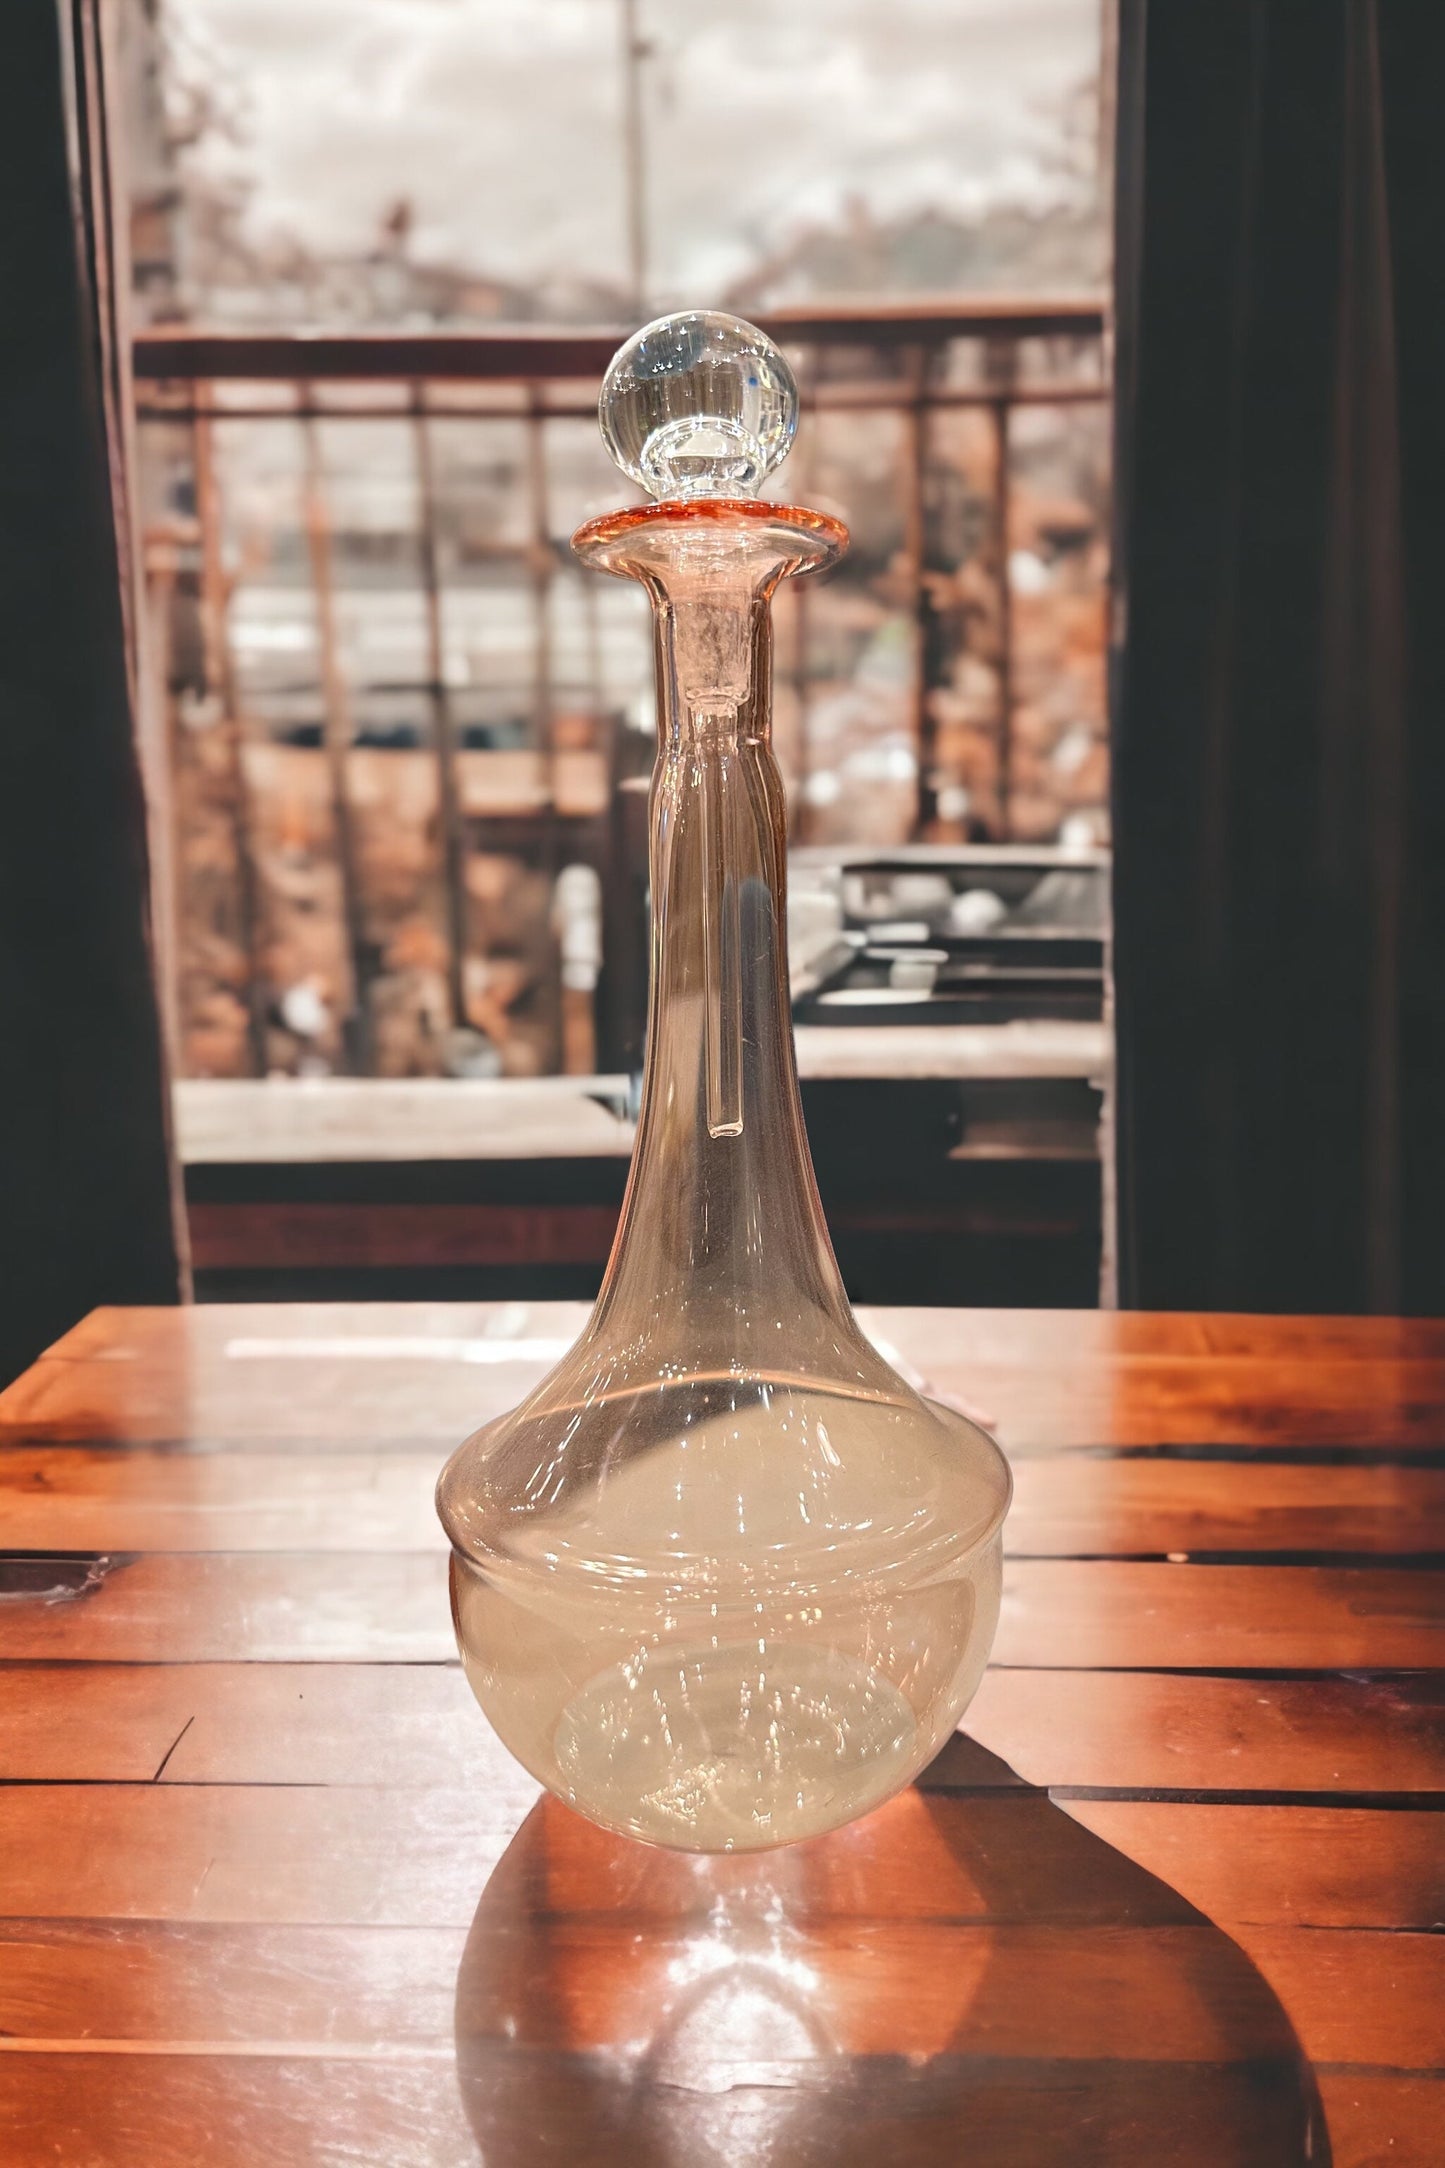 Glass perfume bottle with stopper - Modern perfume bottles - perfume holder - decorative bottles - Glass bottles  - Egyptian decor